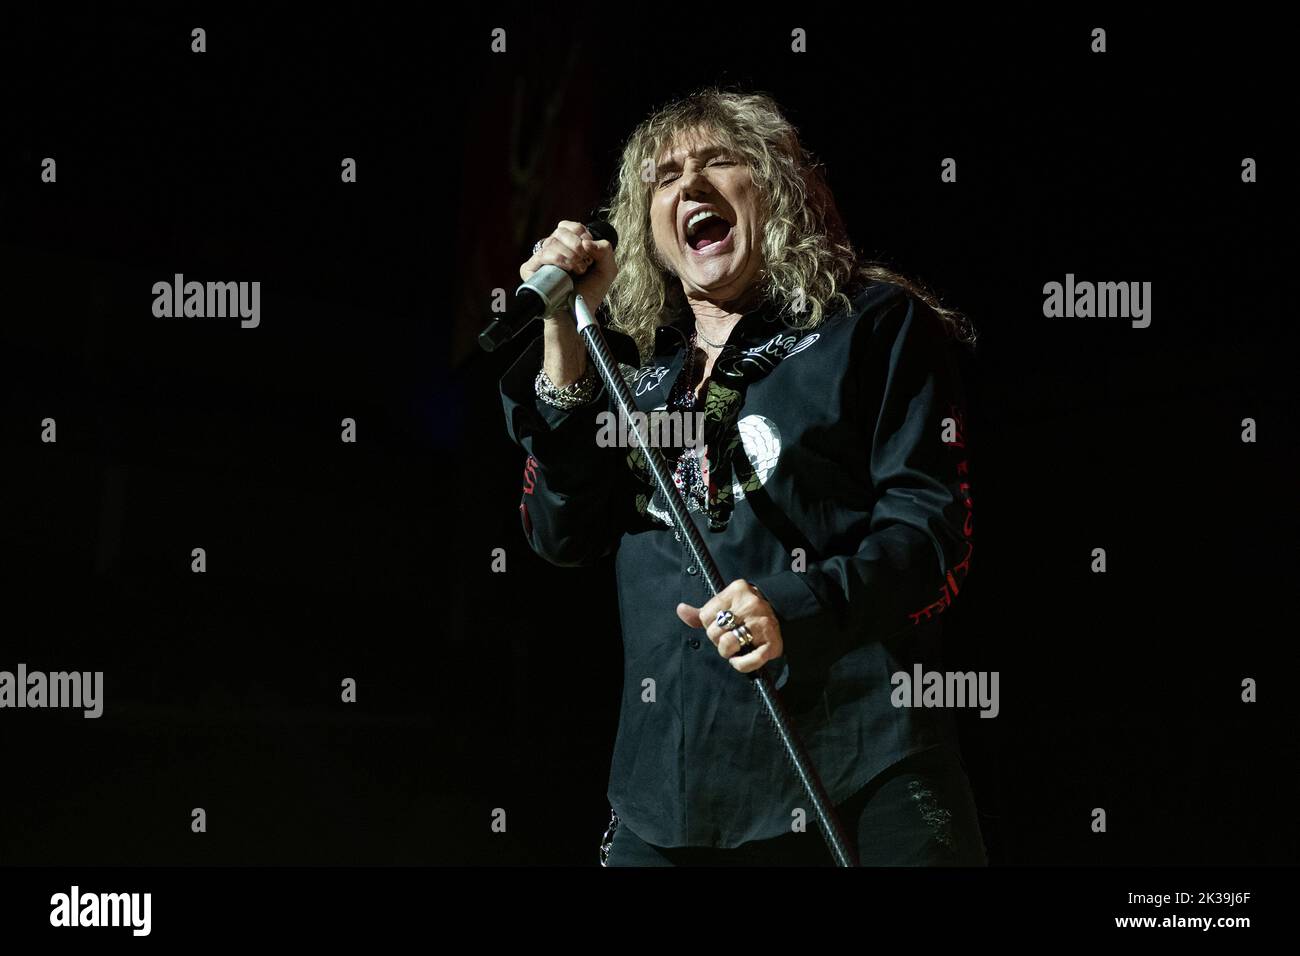 LONDON, ENGLAND Whitesnake perform on stage during their Farewell Tour